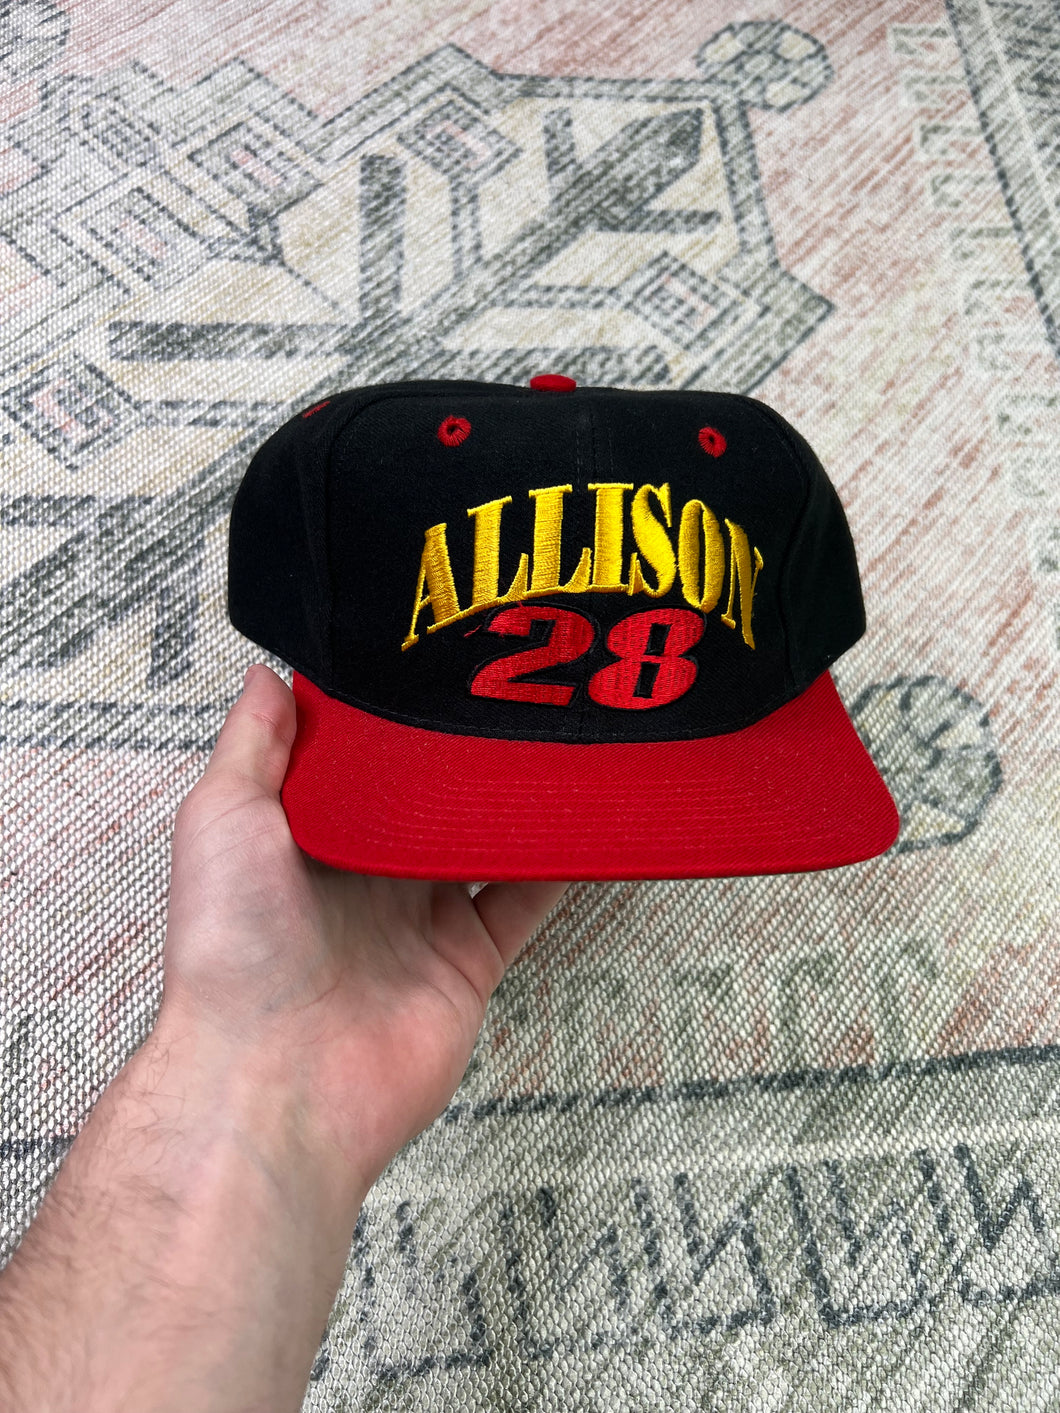 Vintage Davey Allison Embroidered Nascar SnapBack Hat